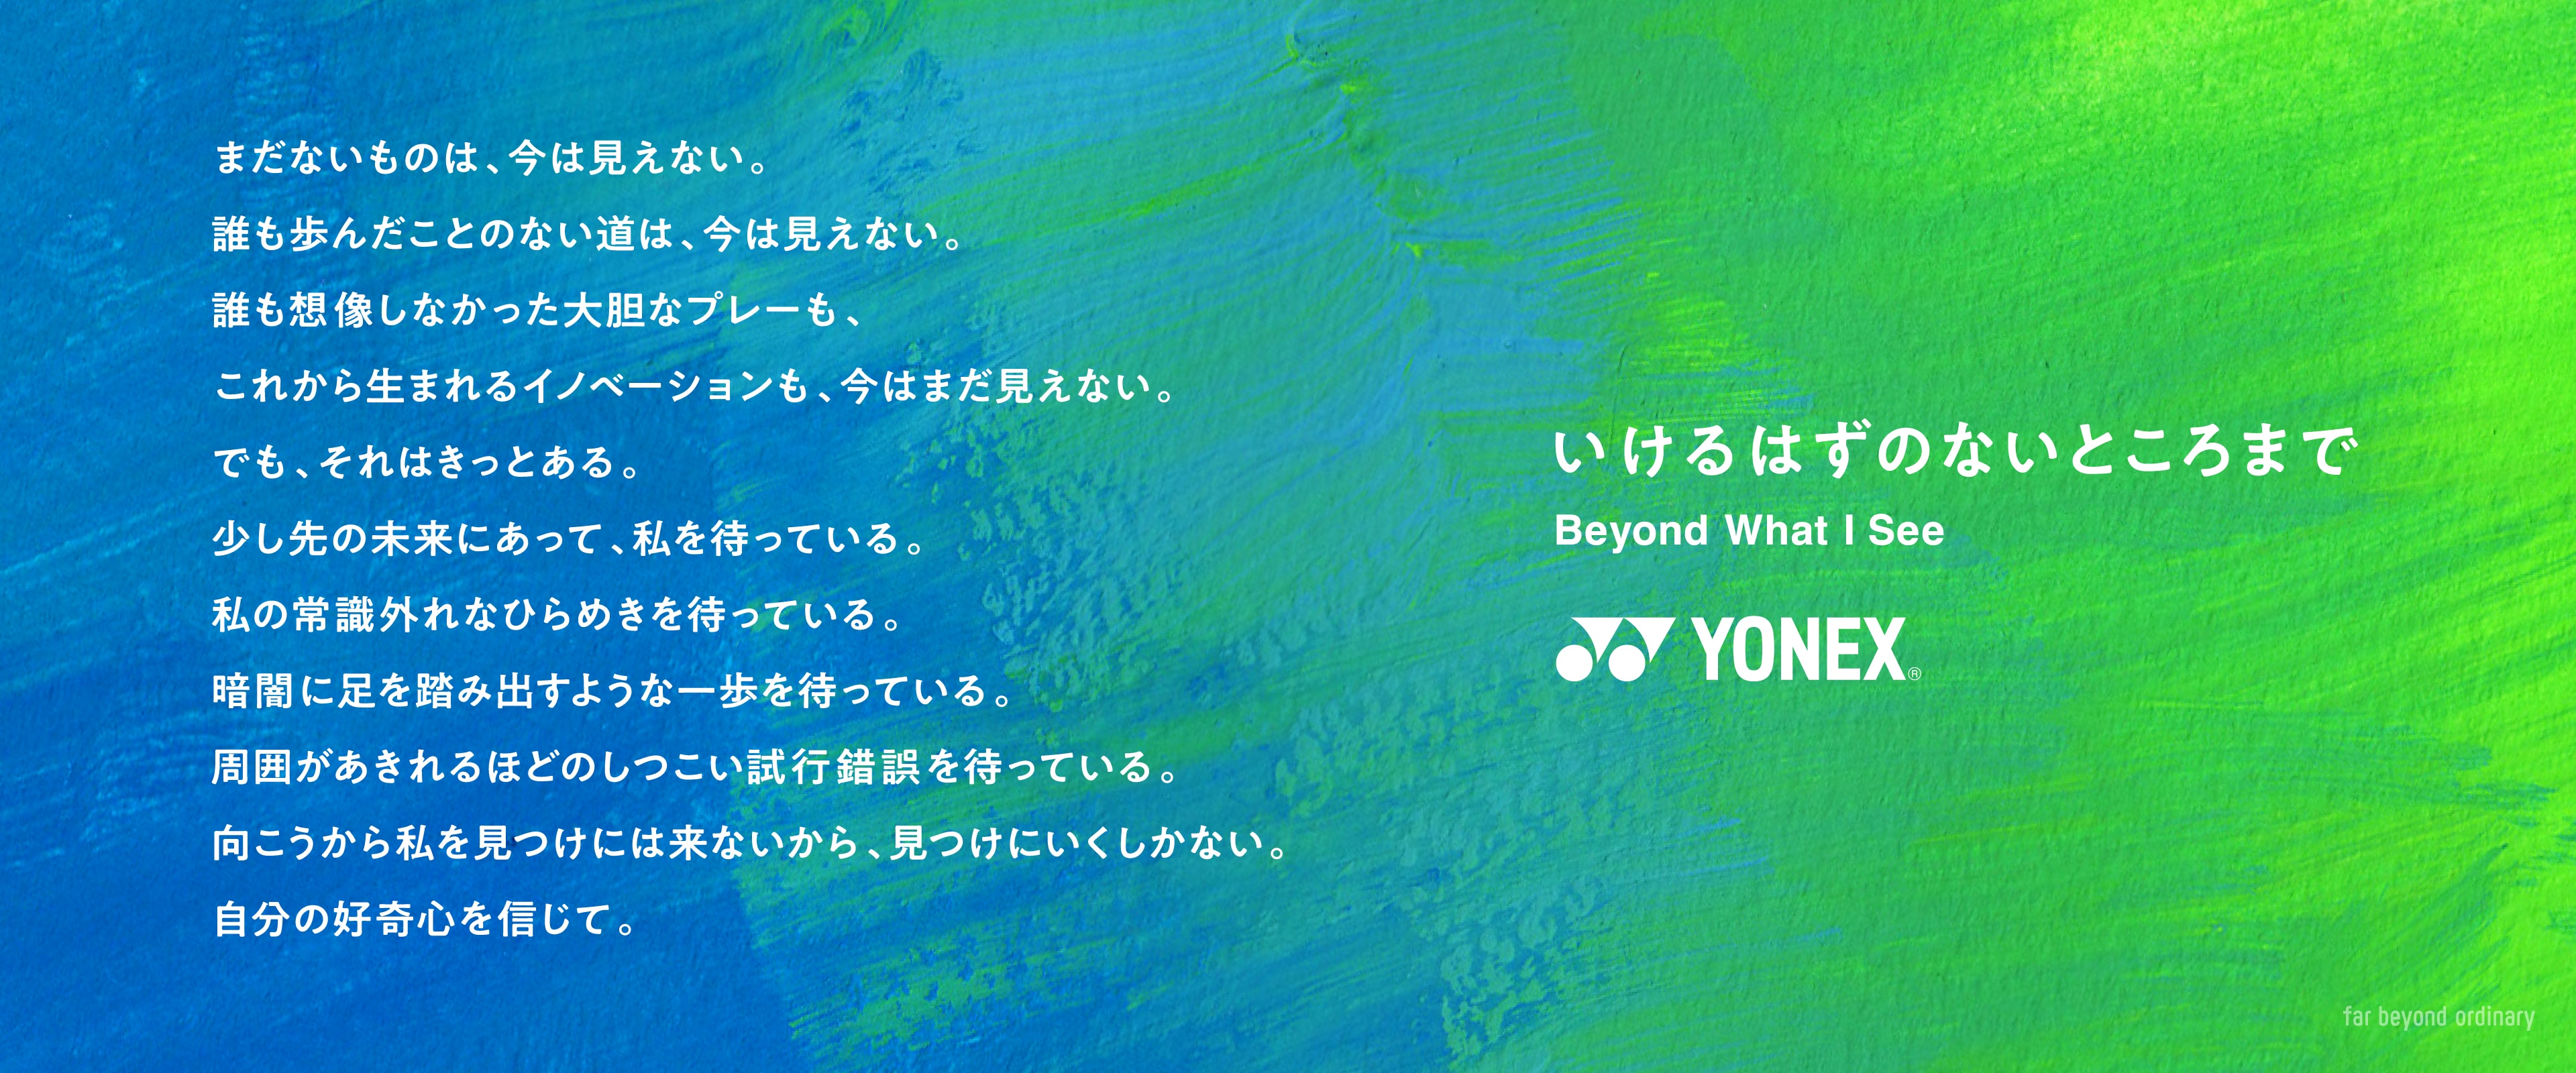 far beyond ordinary | ヨネックス(YONEX)